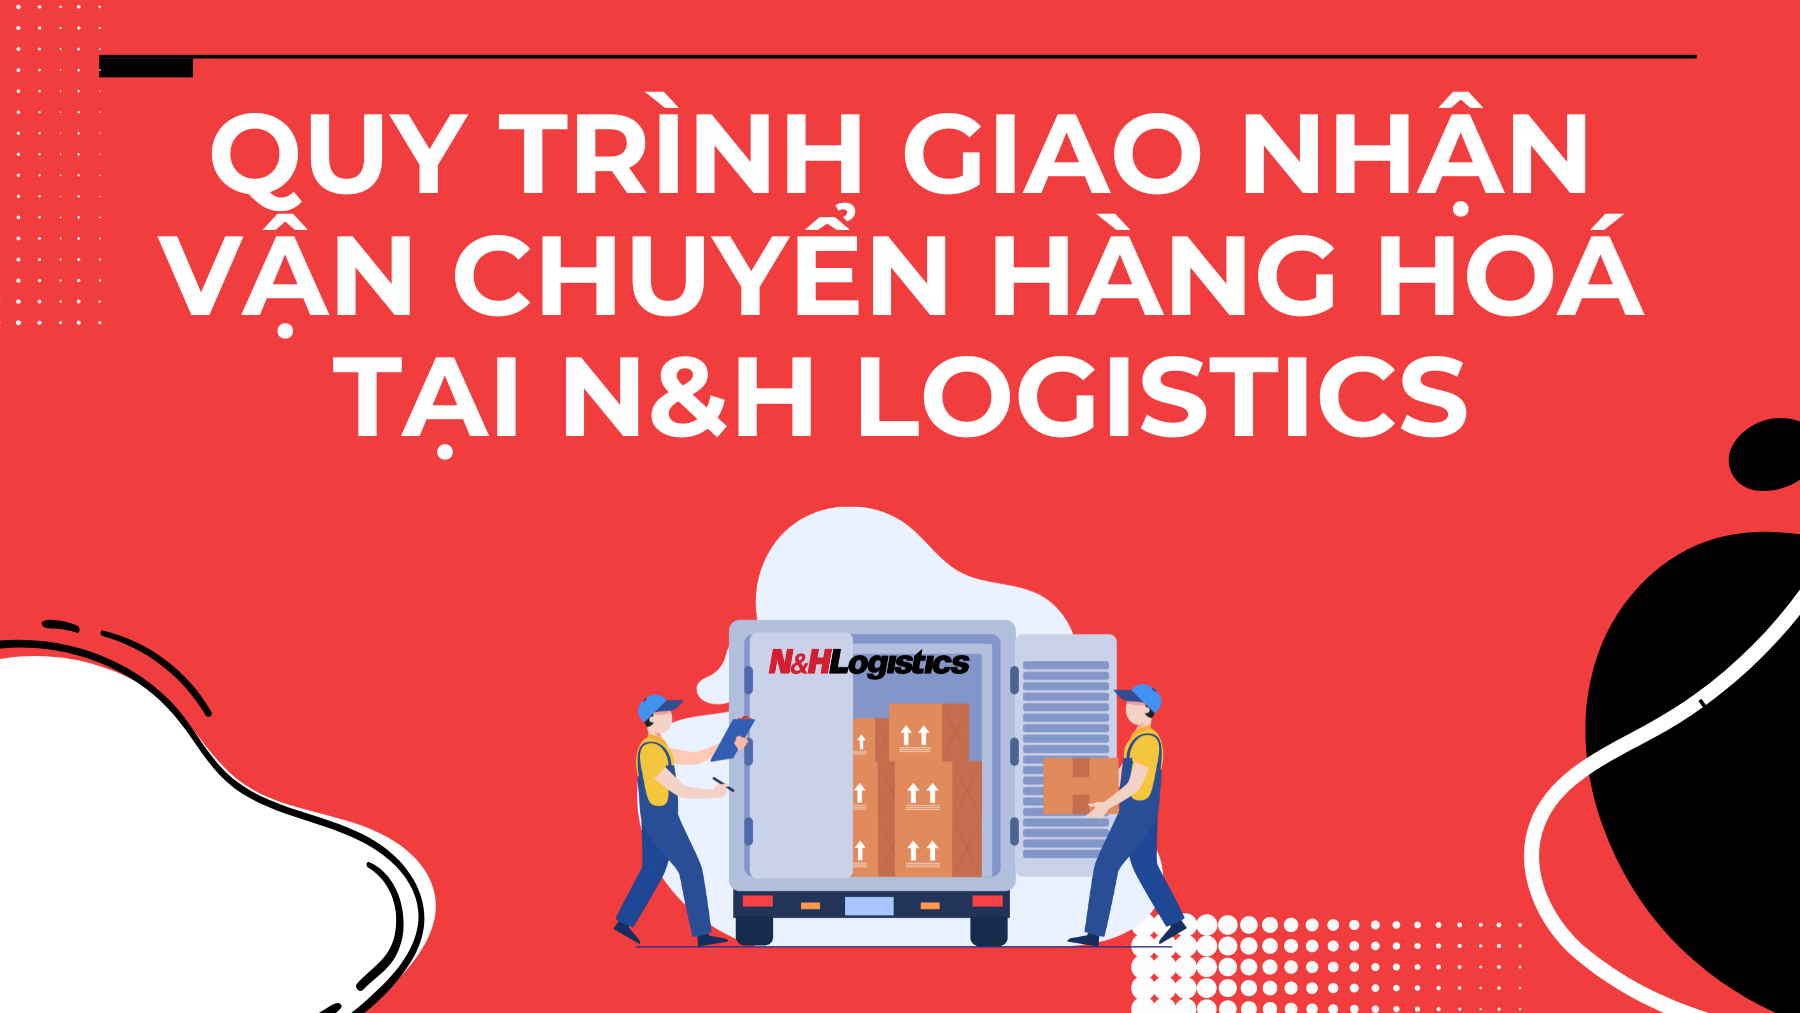 Quy trình giao nhận vận chuyển hàng hoá tại N&H Logistics